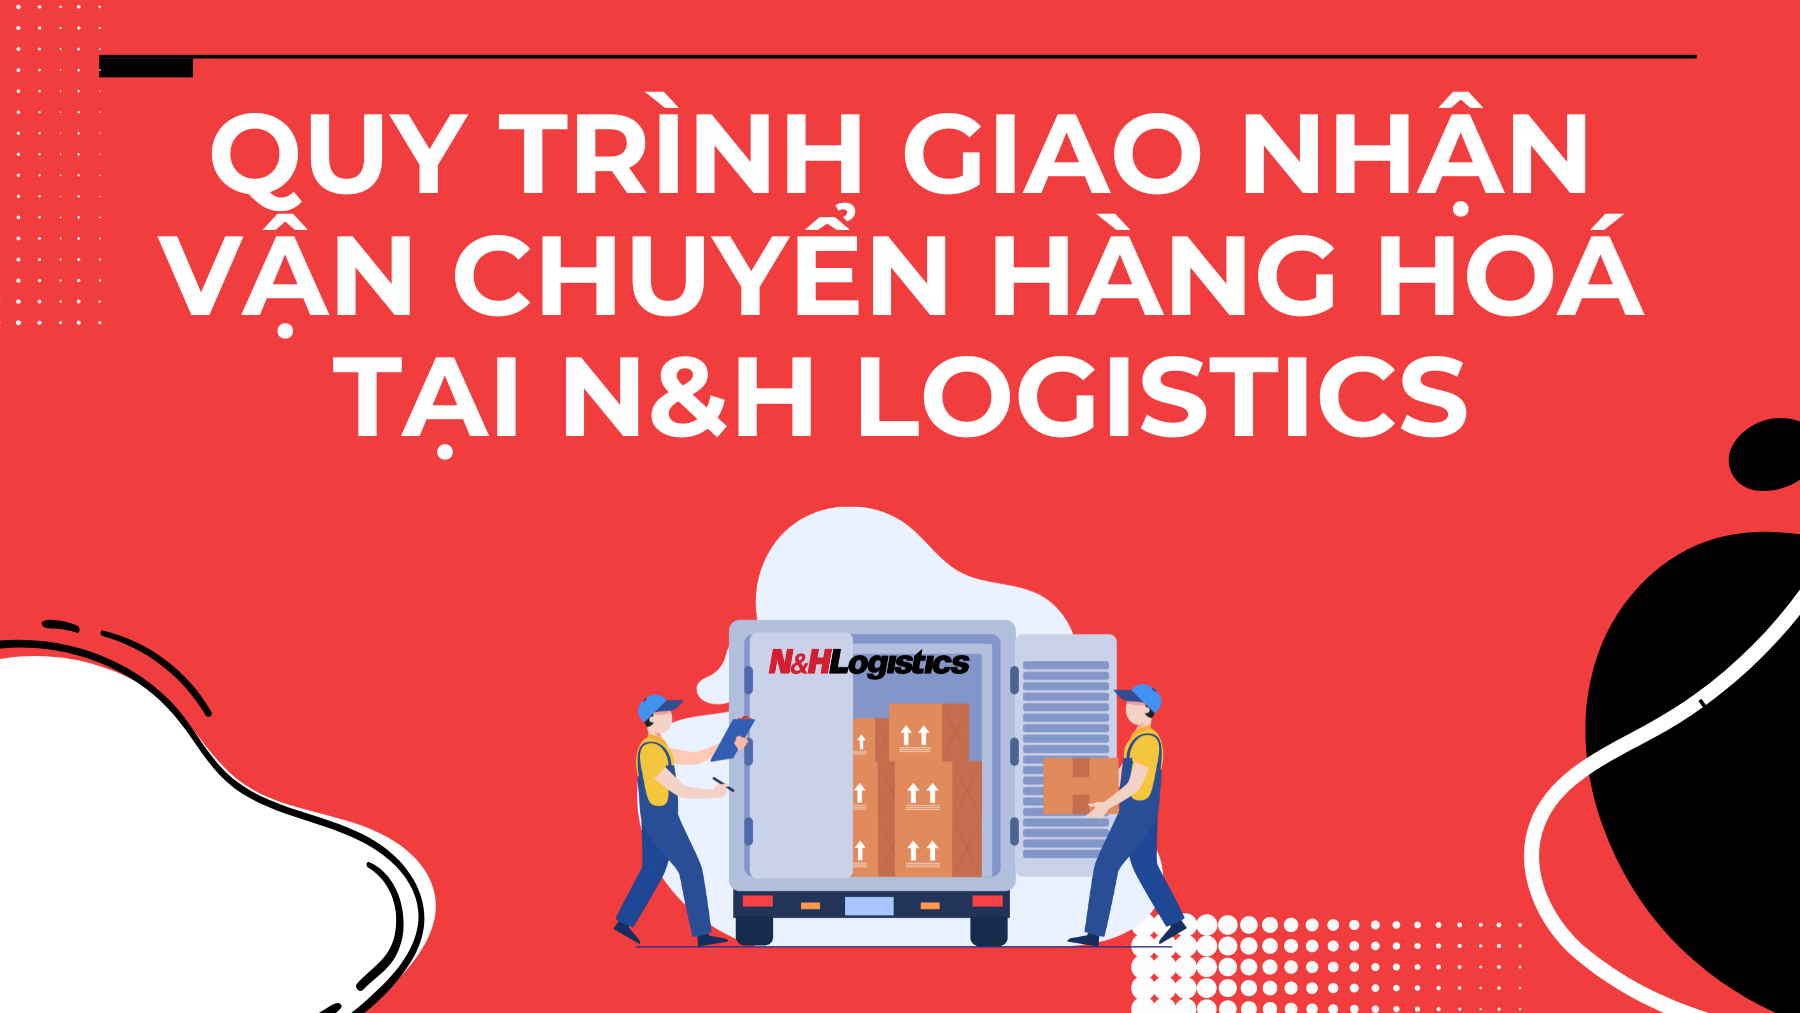 Quy trình giao nhận vận chuyển hàng hoá tại N&H Logistics